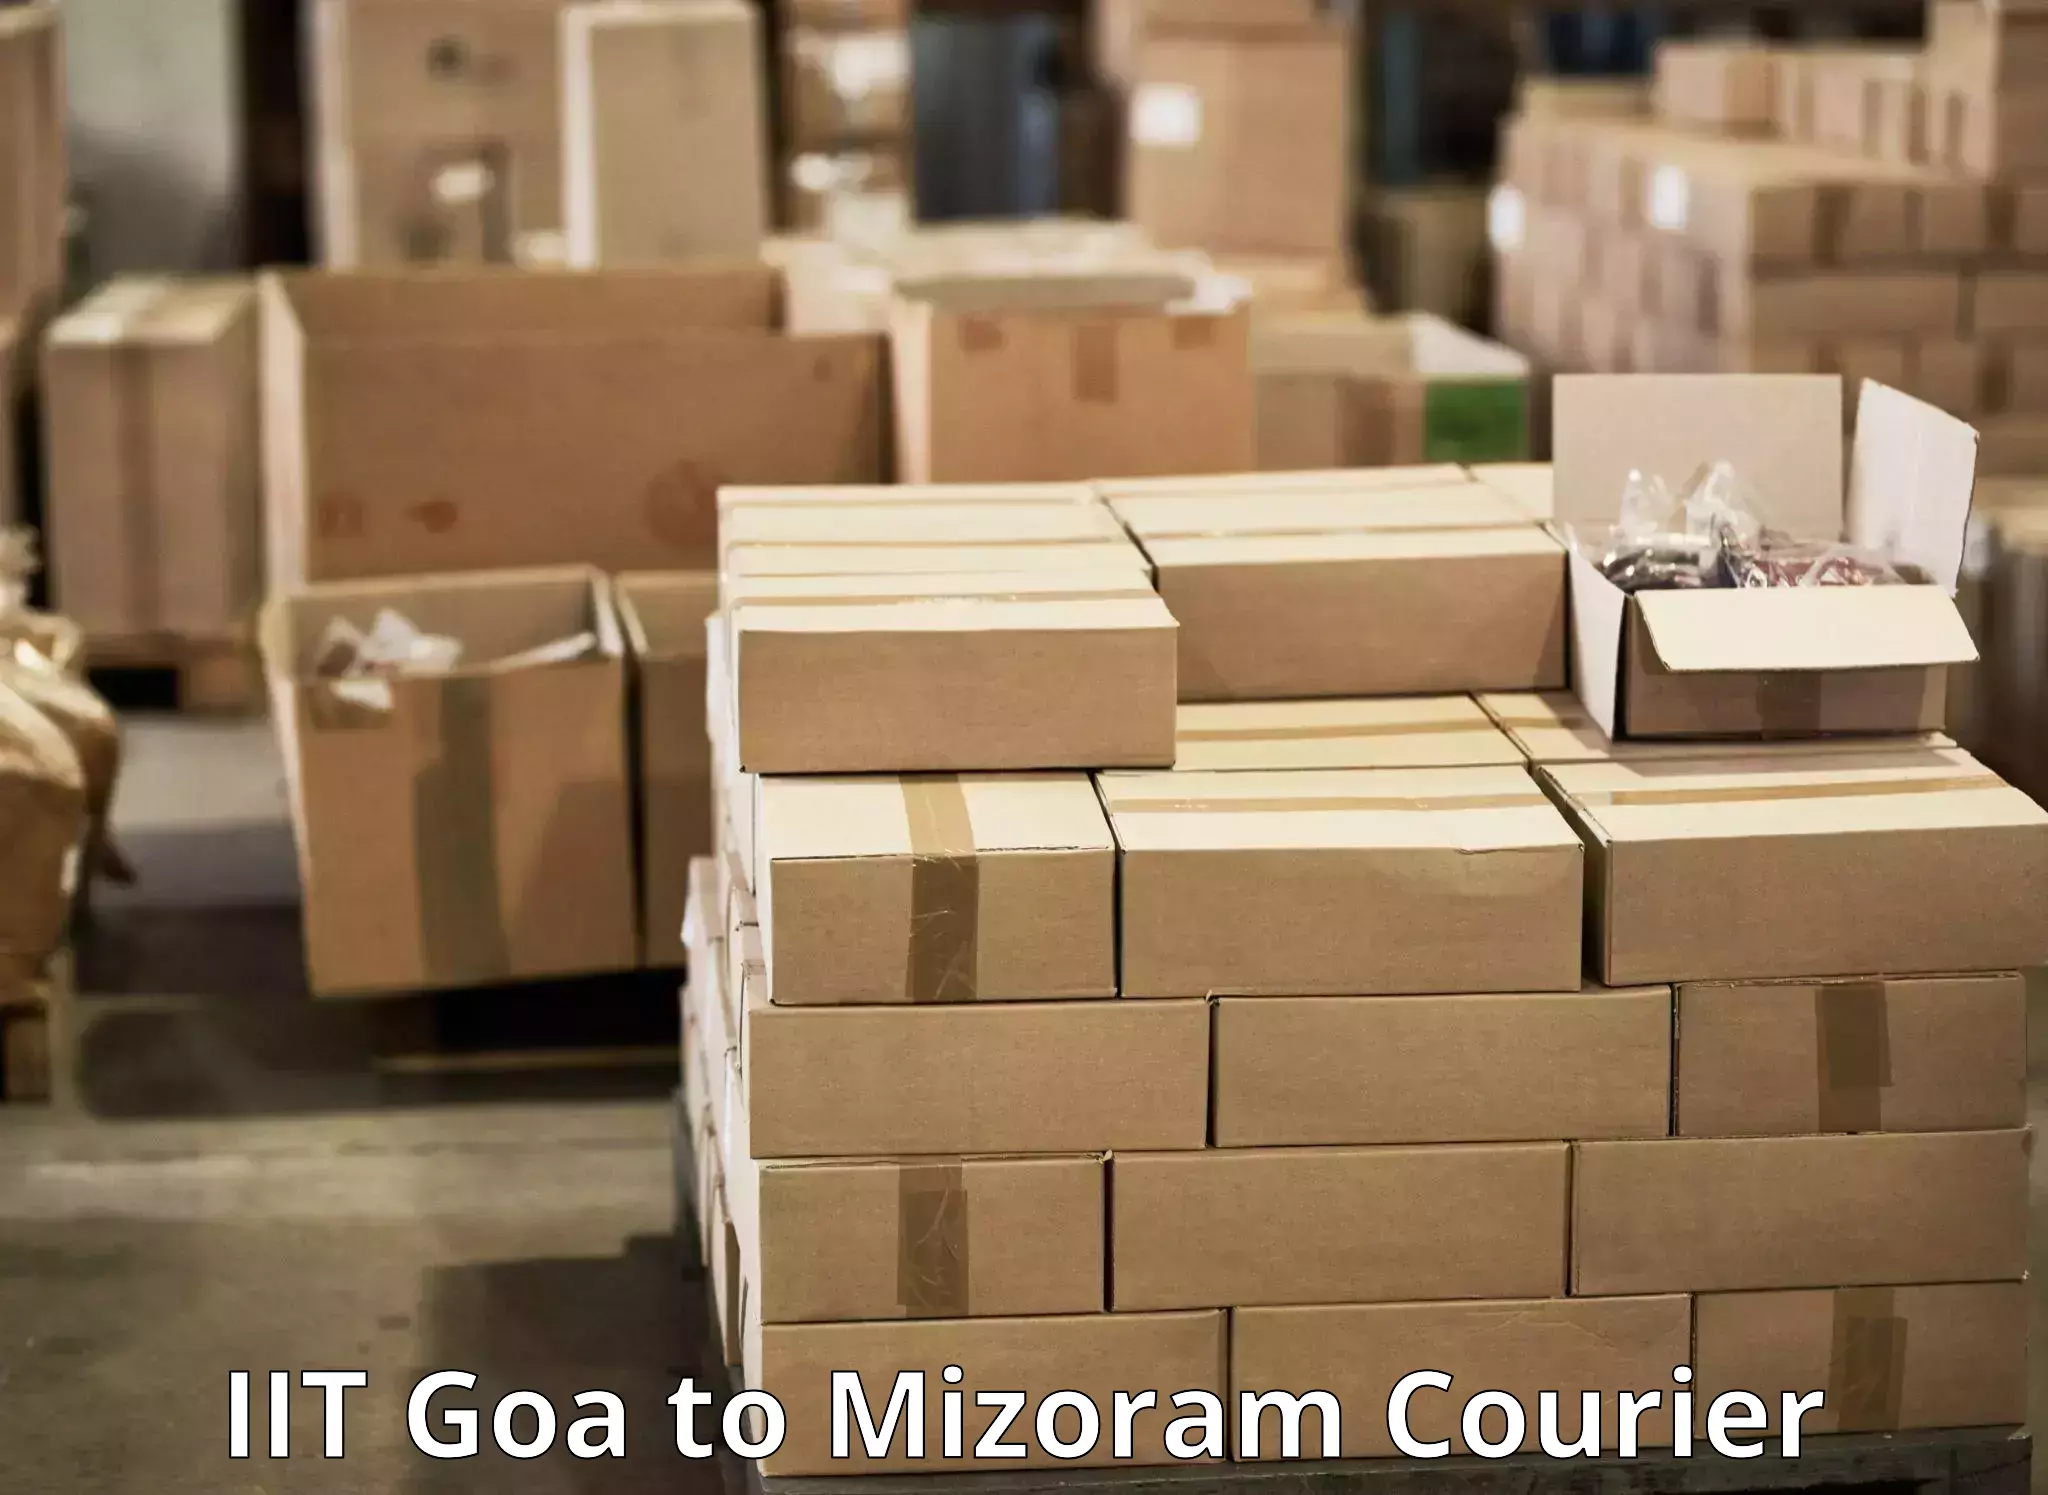 Urgent courier needs IIT Goa to Mizoram